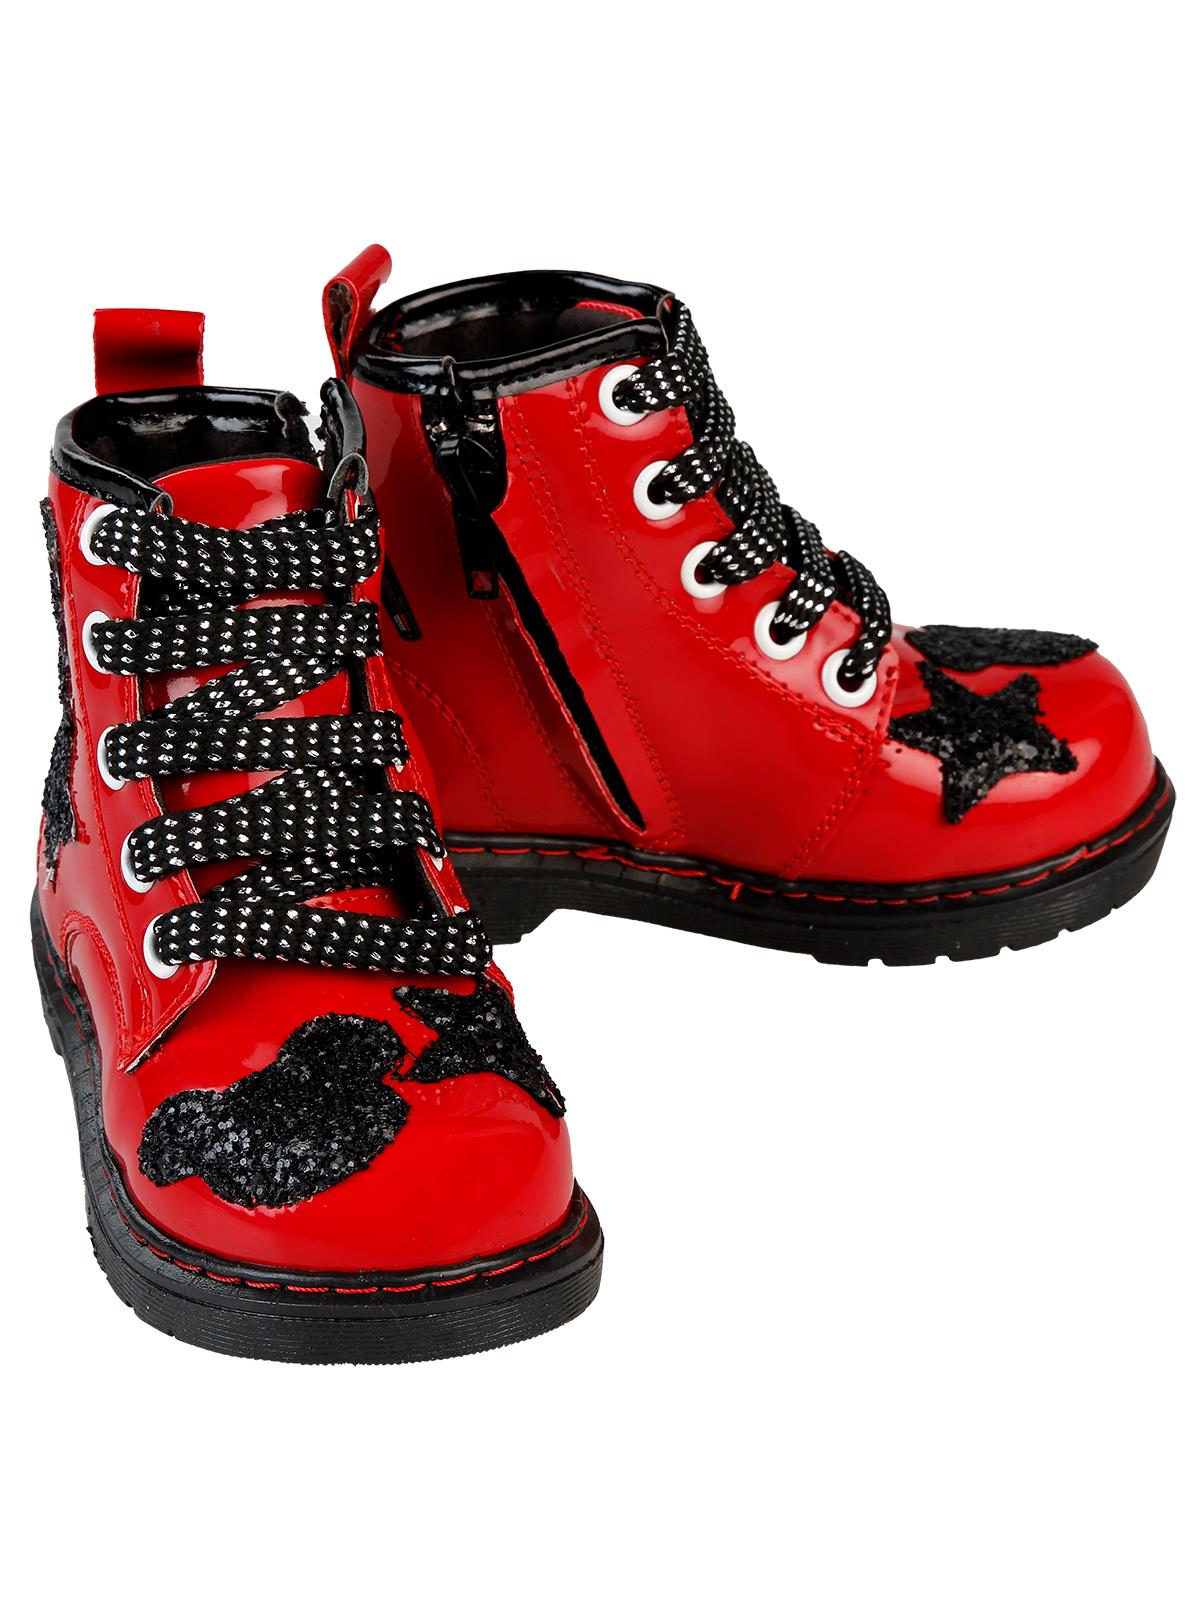 Boots Kız Çocuk Bot 21-25 Numara Kırmızı